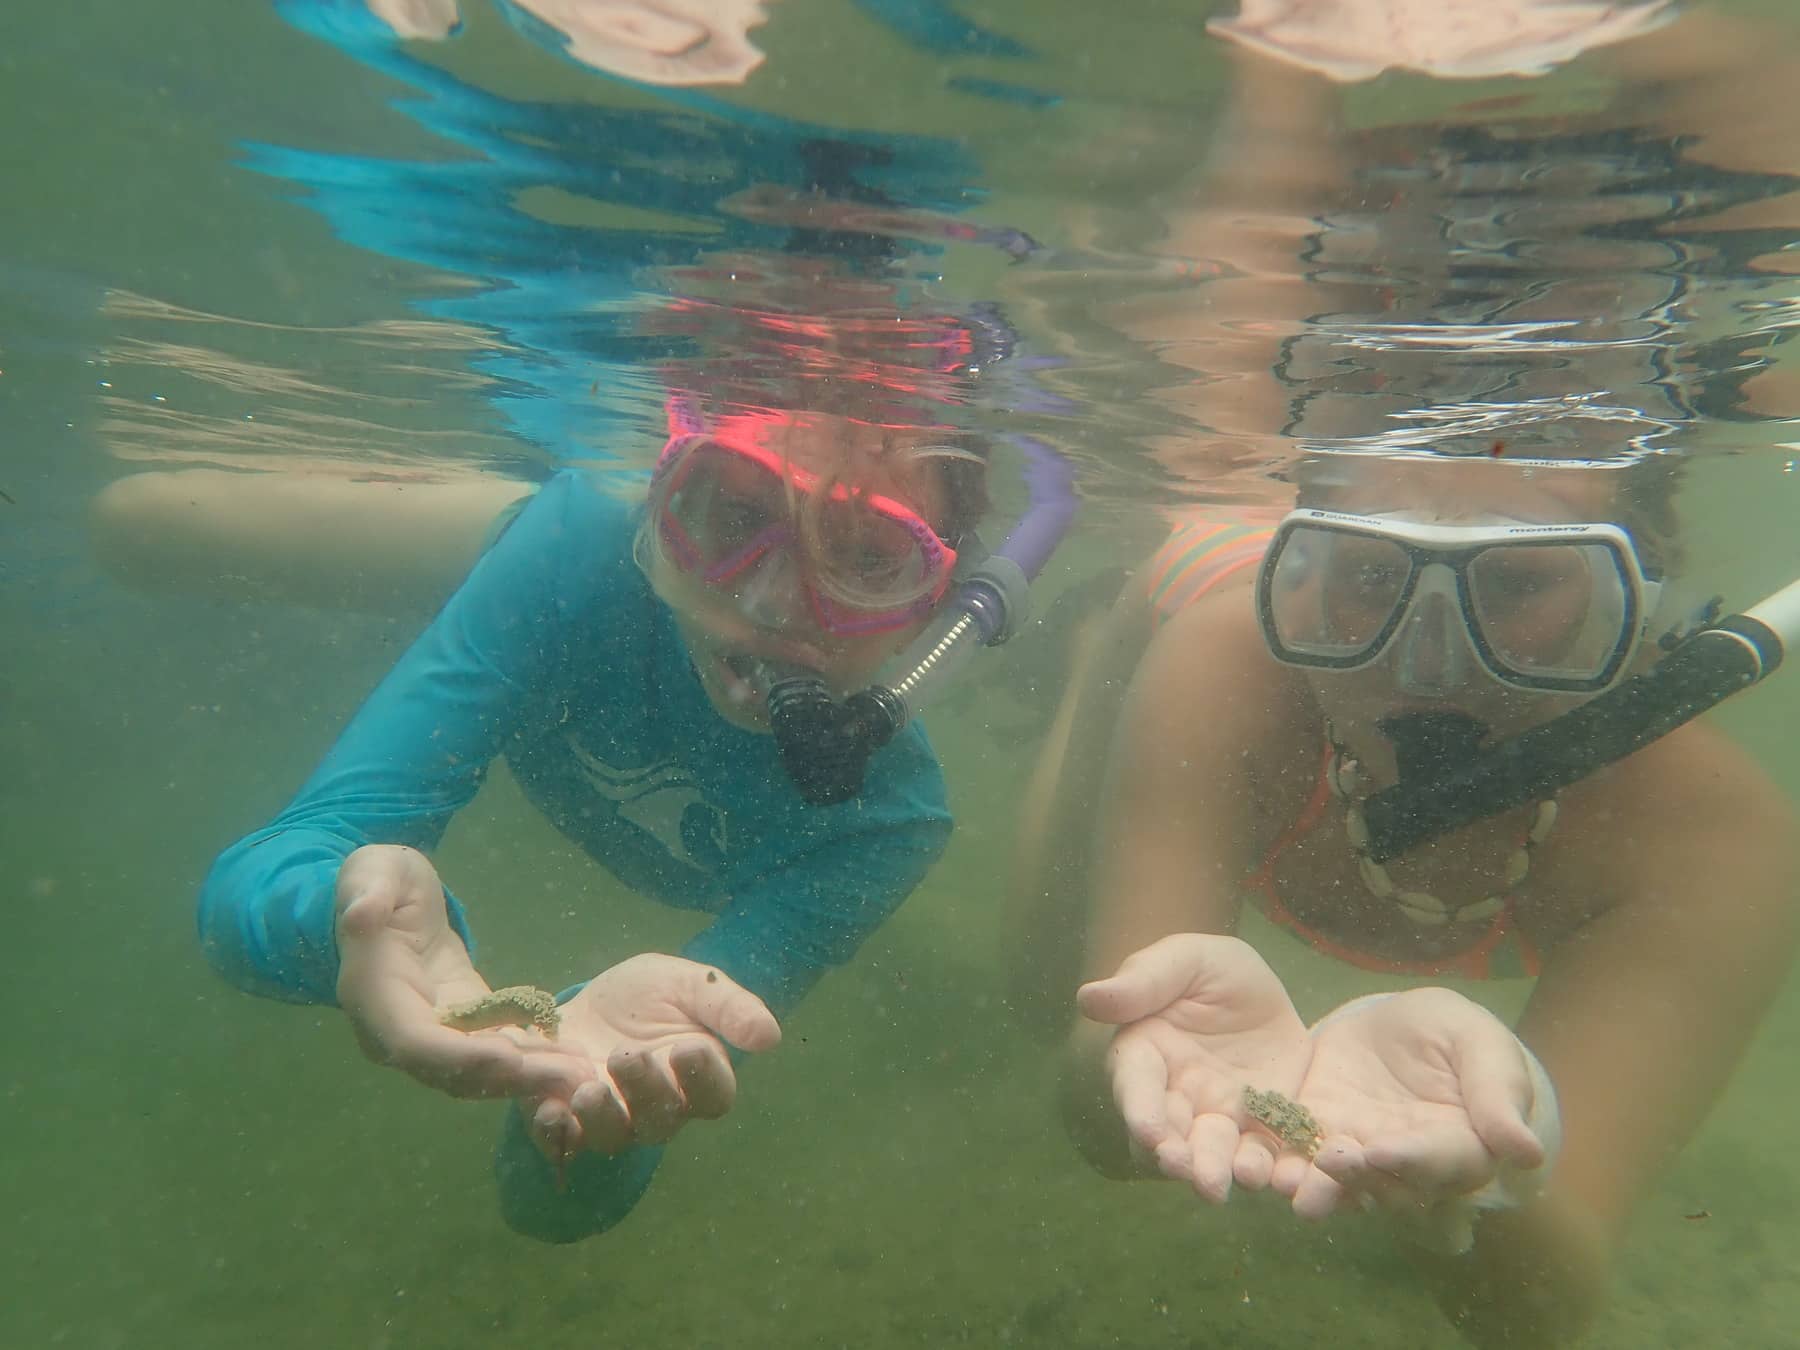 Two Sanibel Sea School campers snorkeling coral reef